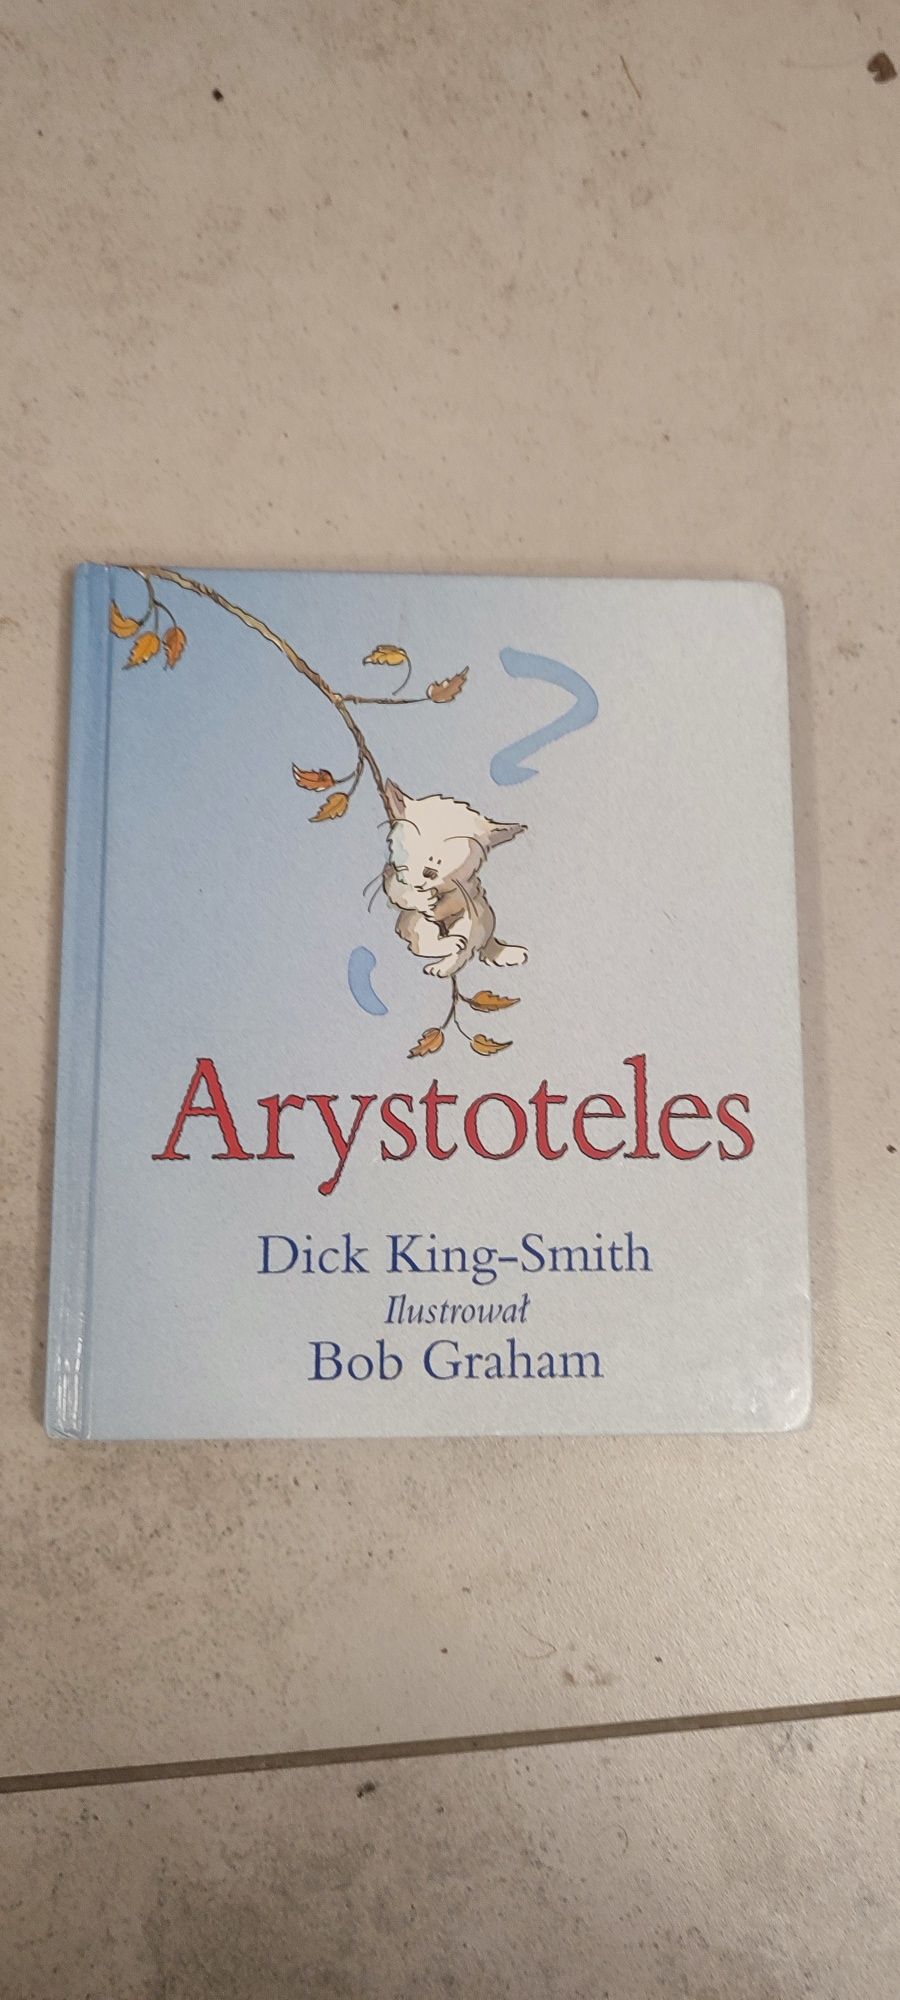 Arystoteles Dick King-Smith